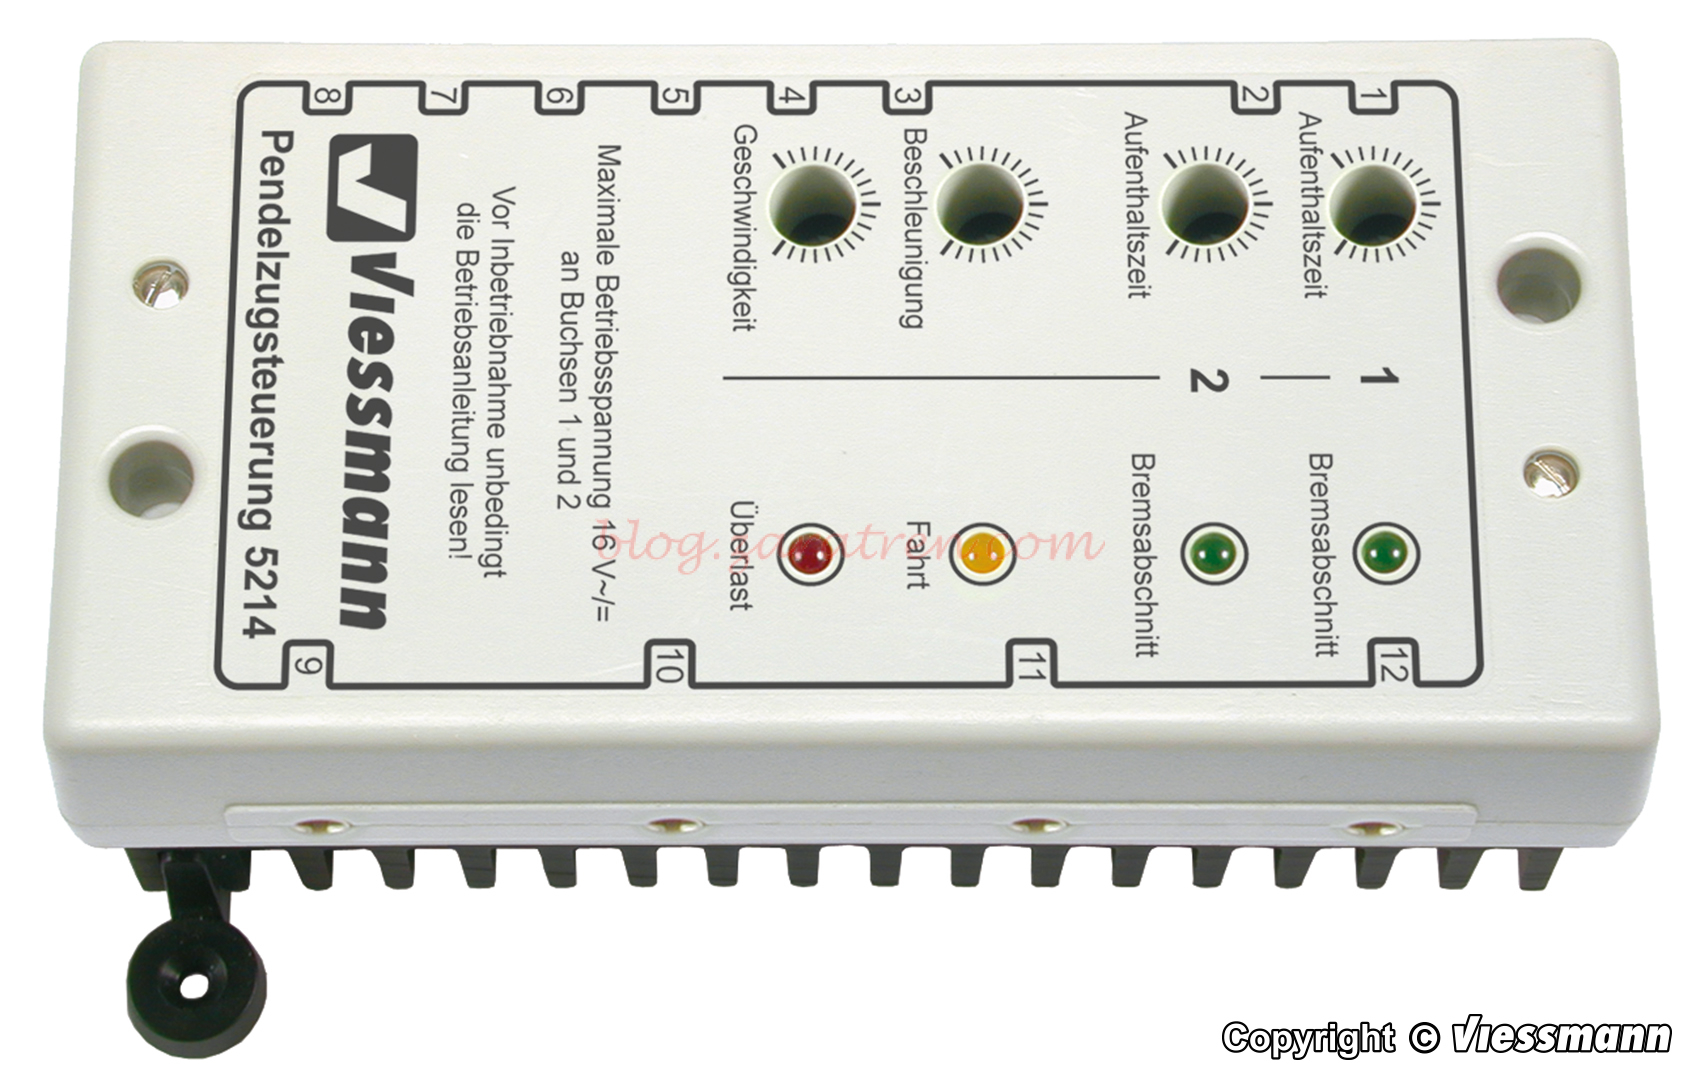 Viessmann – Modulo de control de trenes de ida y vuelta entre dos puntos o estaciones, para analogico, Ref: 5214.